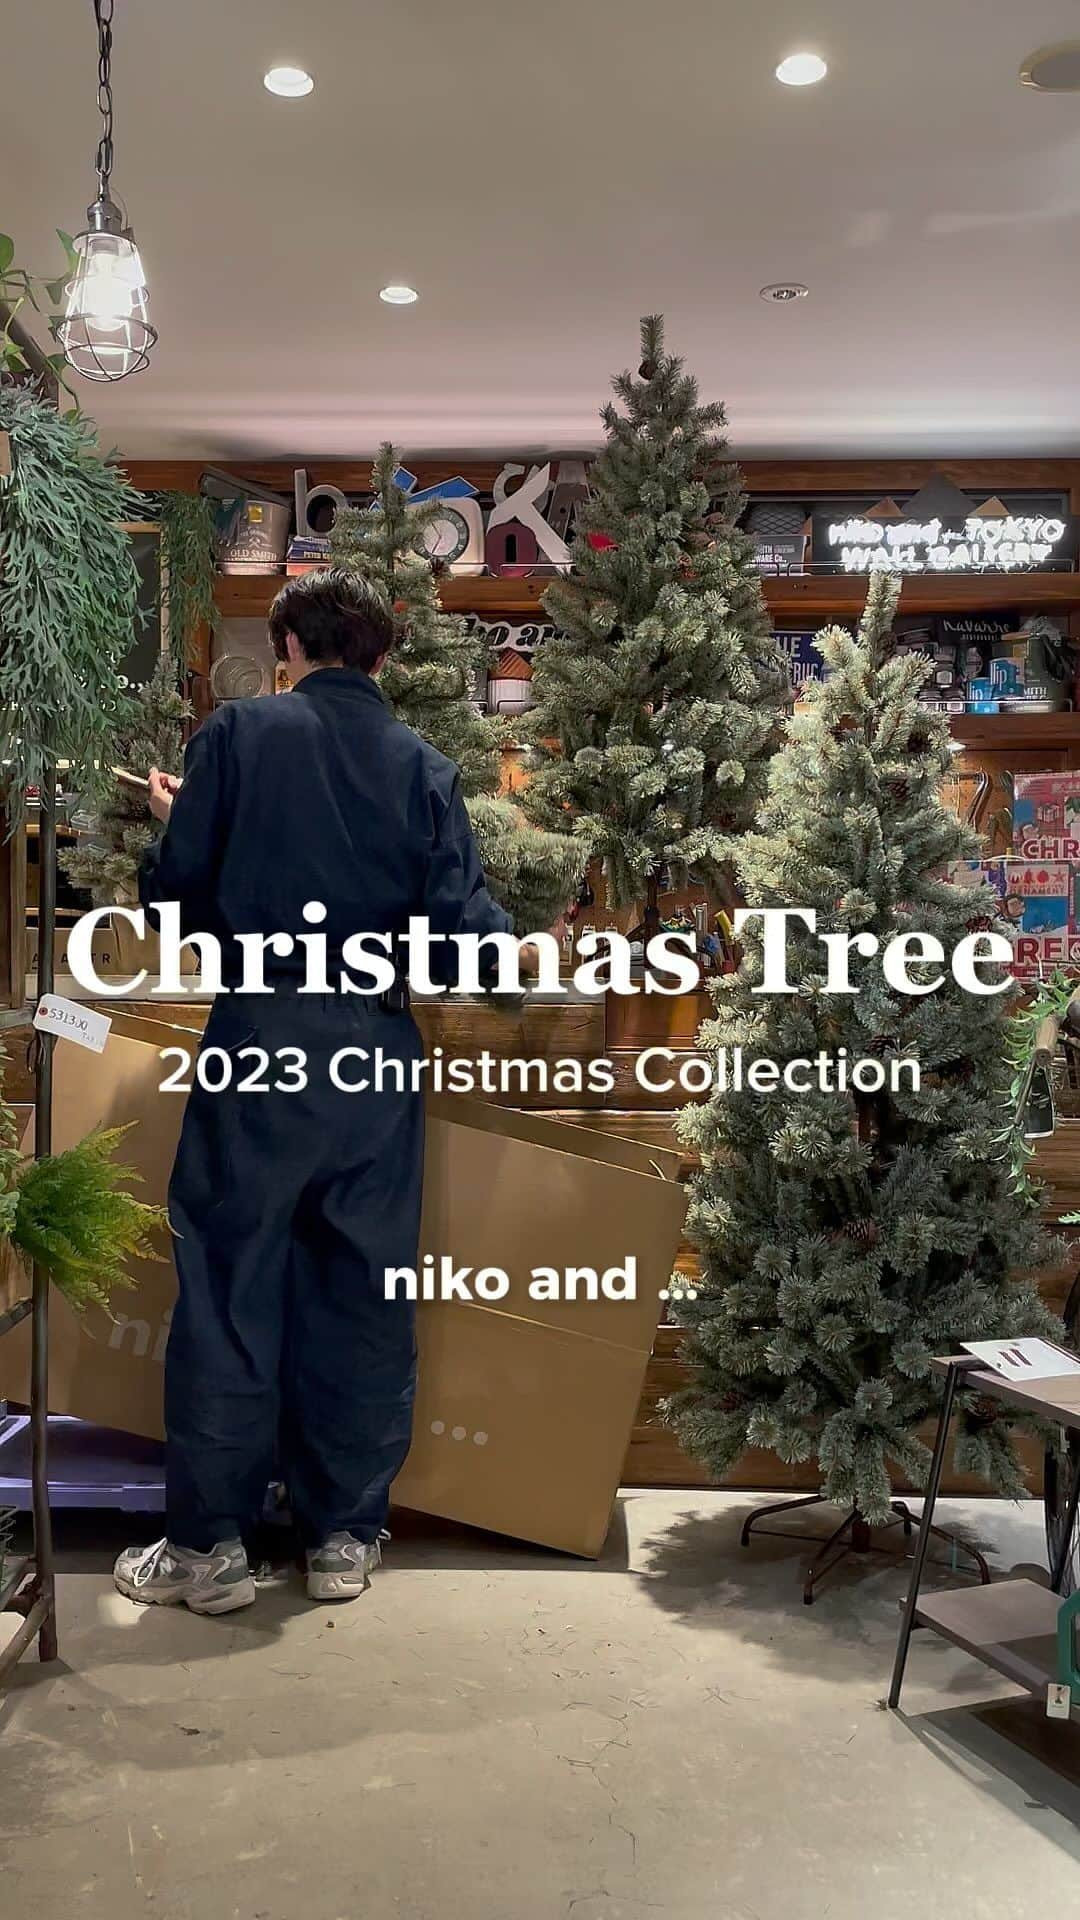 ニコアンドのインスタグラム：「2023 niko and ... Christmas Tree  クリスマスツリーの準備は出来ましたか？🌲  今年は新型のハーフツリーを合わせて 全6サイズがラインナップ！  ぜひ今年のクリスマスツリーはニコアンドで！  ご不明点がございましたら、 DMにてお気軽にお問い合わせくださいませ！  ご来店お待ちしております！  #ニコトーキョーzakka  @nikoandtokyo  ーーーーーーーーーーーーーーーー 　　 　　OPEN 11:00 CLOSE 21:00  ーーーーーーーーーーーーーーーー  #nikoand #nikoandtokyo #ニコアンド #ニコアンド #ニコアンド #クリスマスツリー #クリスマス #クリスマス #クリスマス #クリスマスの準備 #クリスマスの飾り #お家クリスマス #お家クリスマスパーティー #インテリアデザイン #インテリア #インテリアコーディネート #お部屋作り #お部屋コーディネート #christmastree #christmasdecor #christmastime #christmasdecorations #christmasgifts #christmasmood #tokyo #japan #2023xmas #xmas」